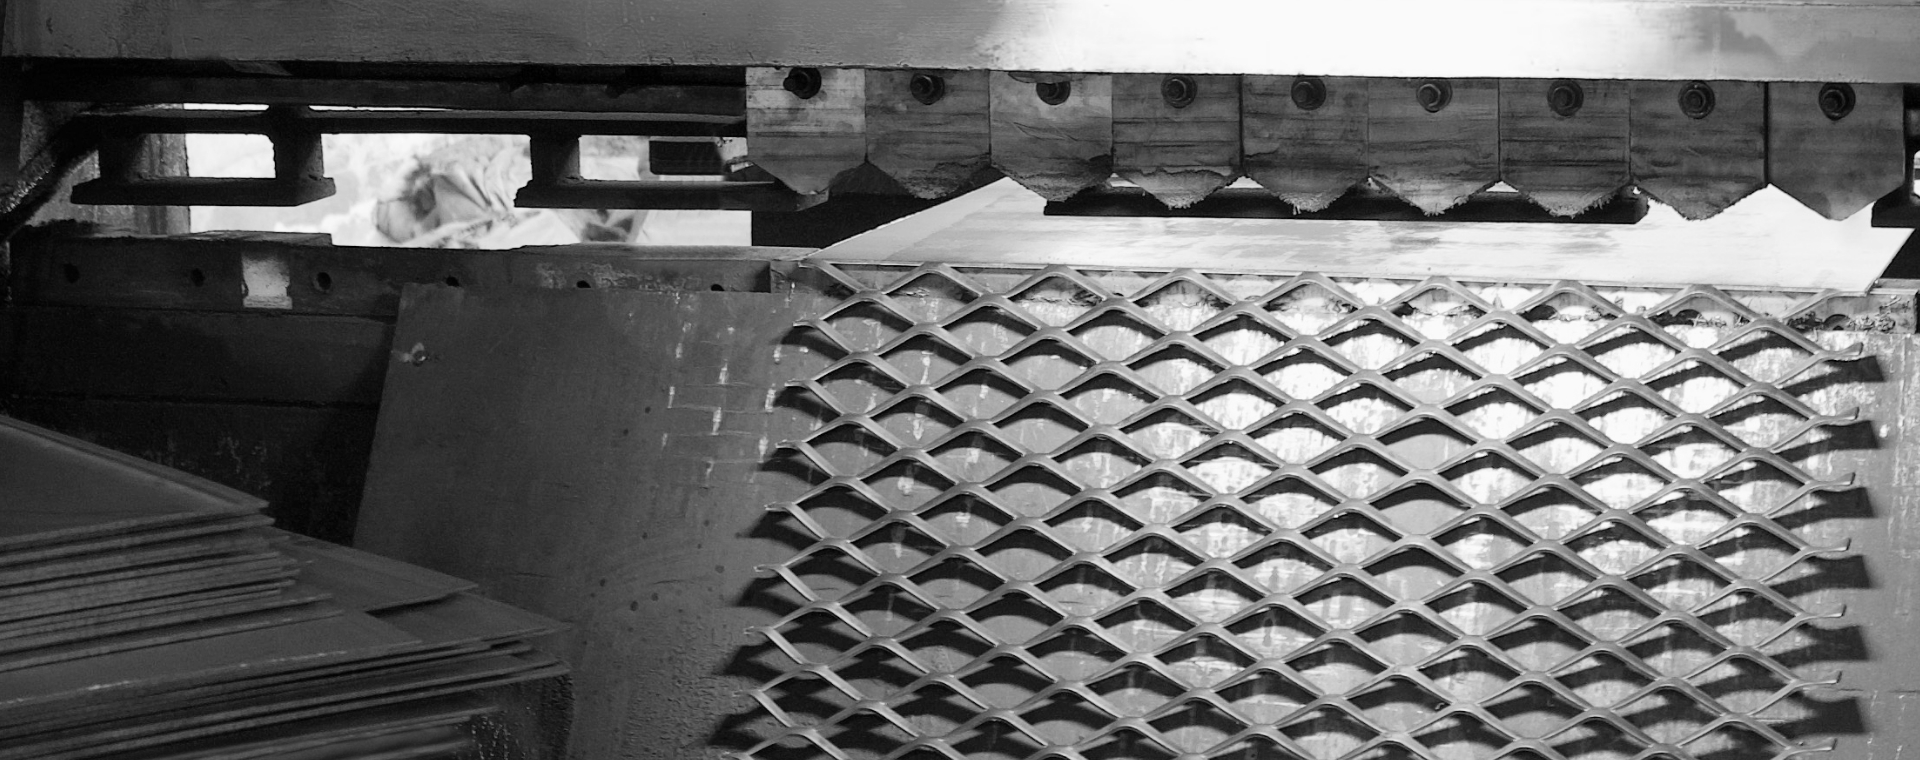 鋼板網機正在將鋼板進行沖壓擴張，制造鋼板網。